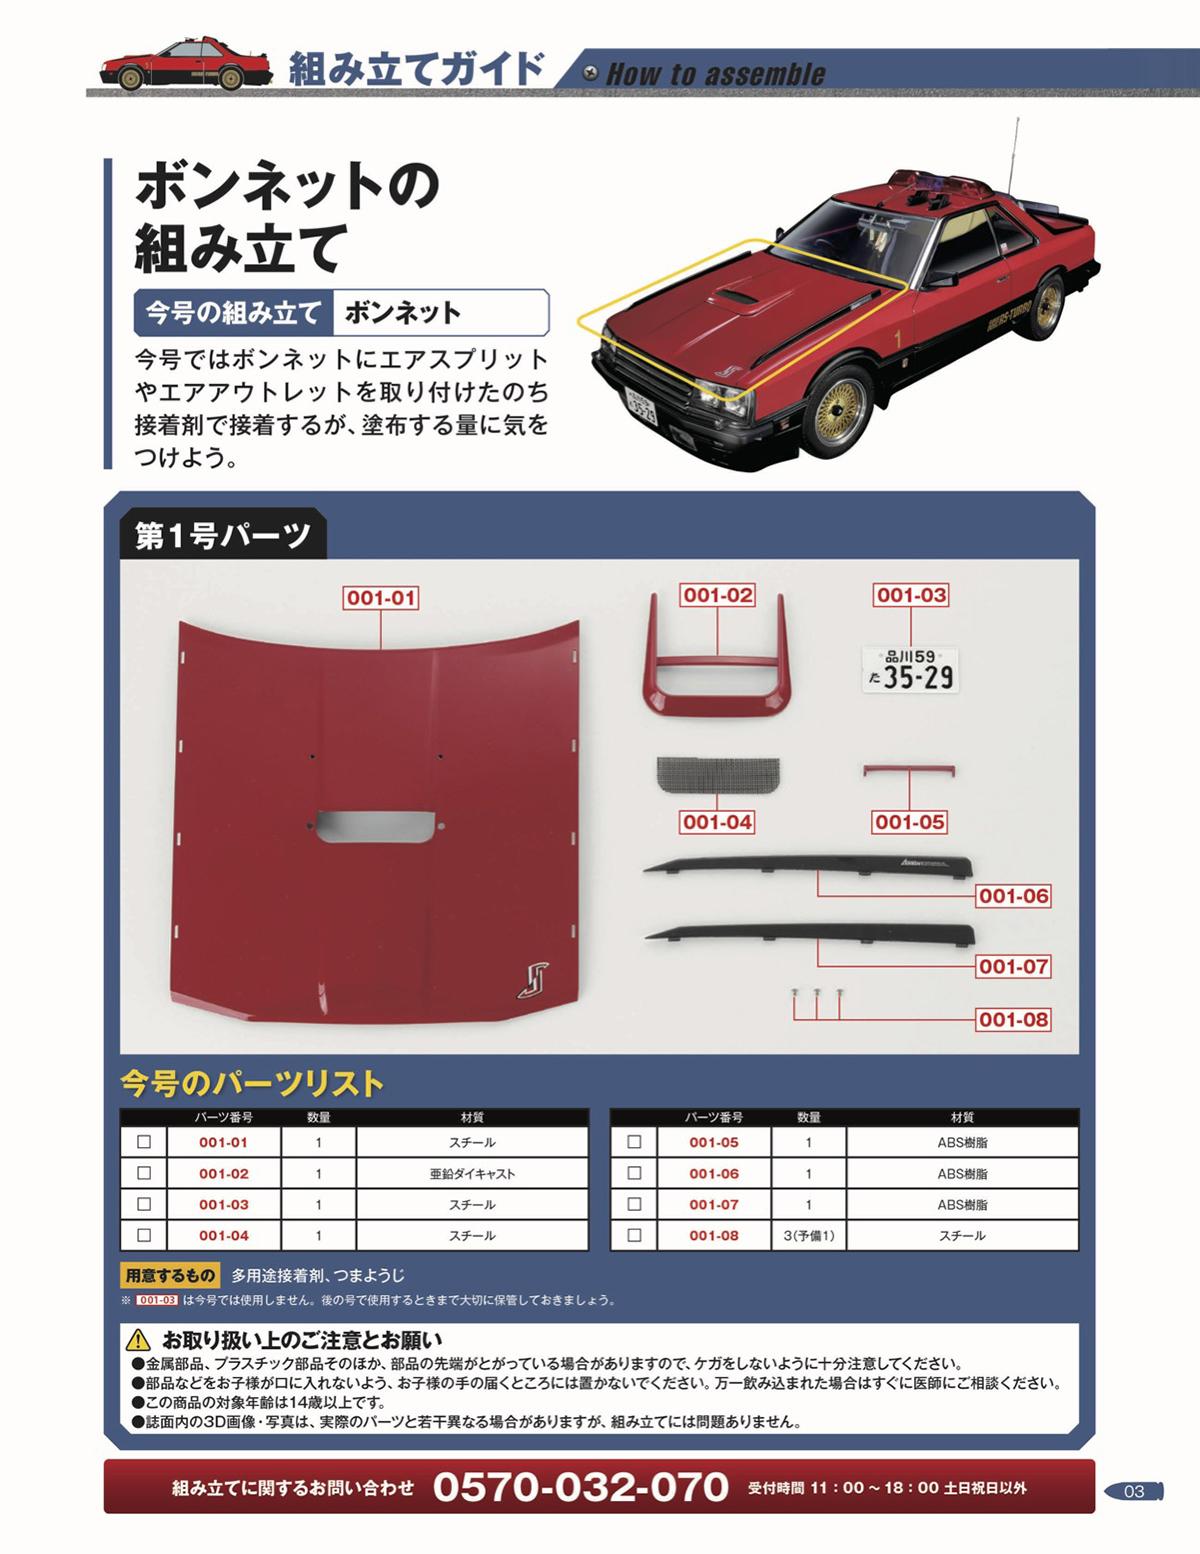 週刊「西部警察 MACHINE RS-1 ダイキャストギミックモデルをつくる」発売 〜 画像18